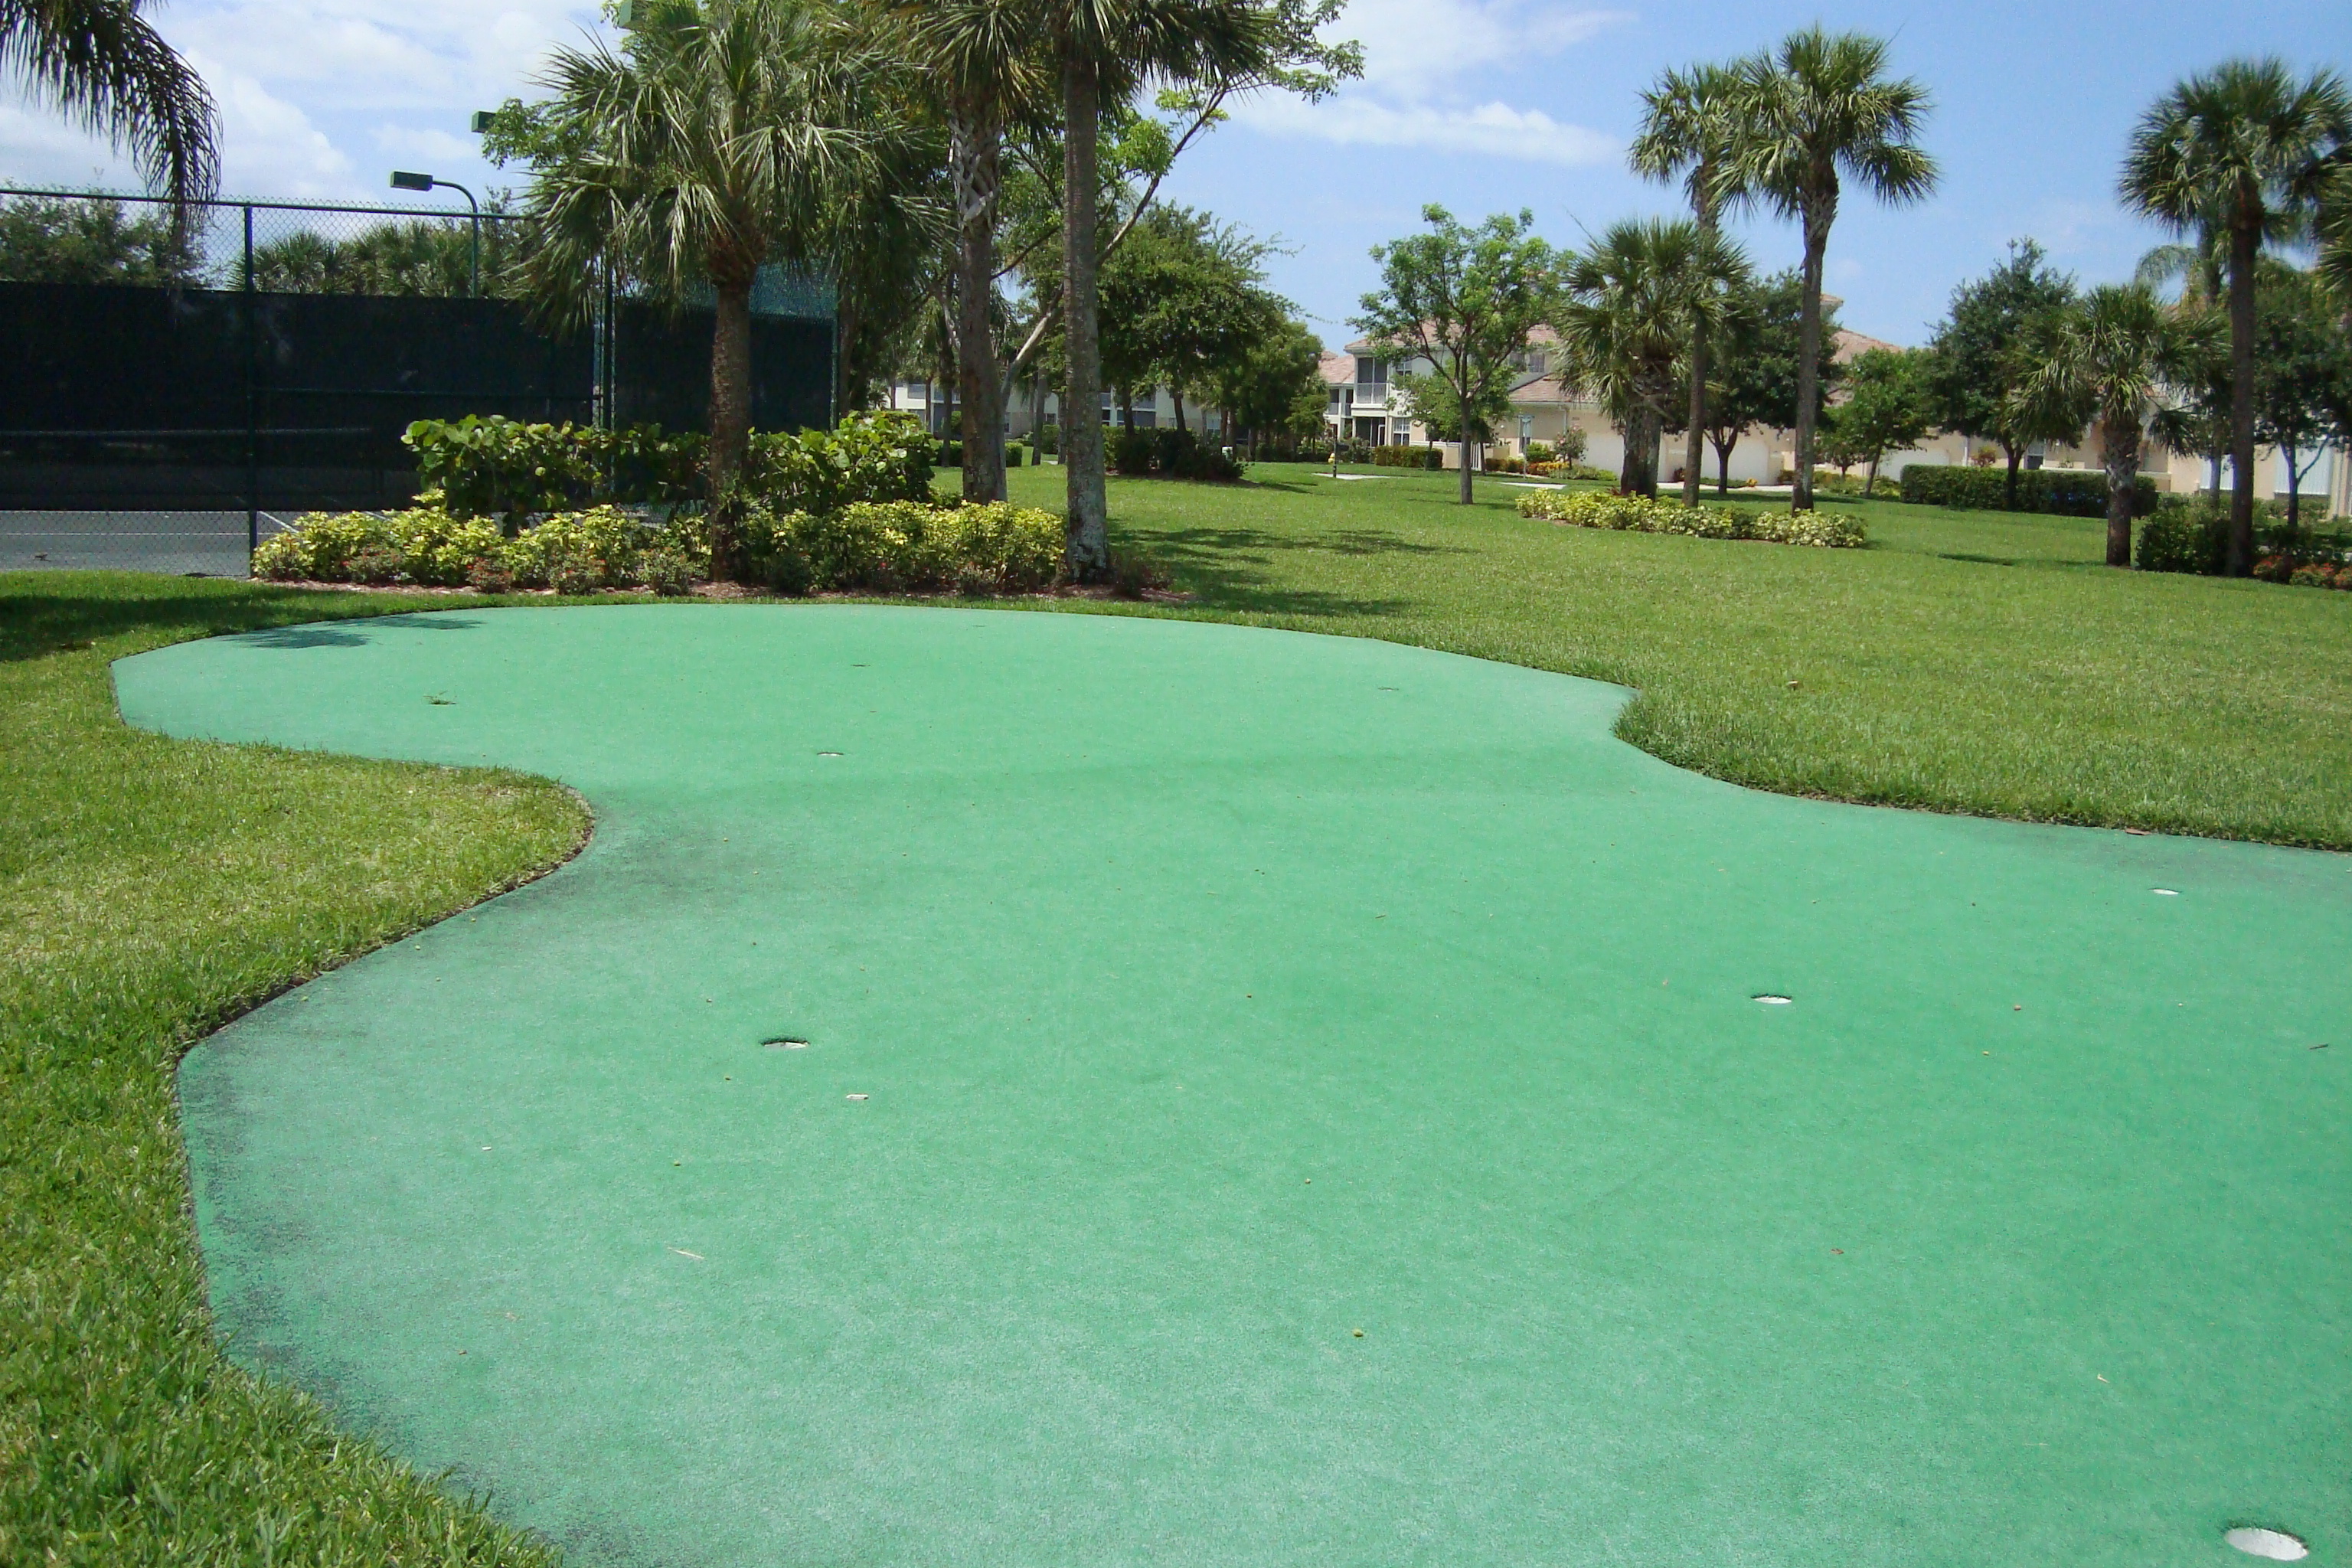 Putting green at Bridgewater Bay in Naples, Florida.